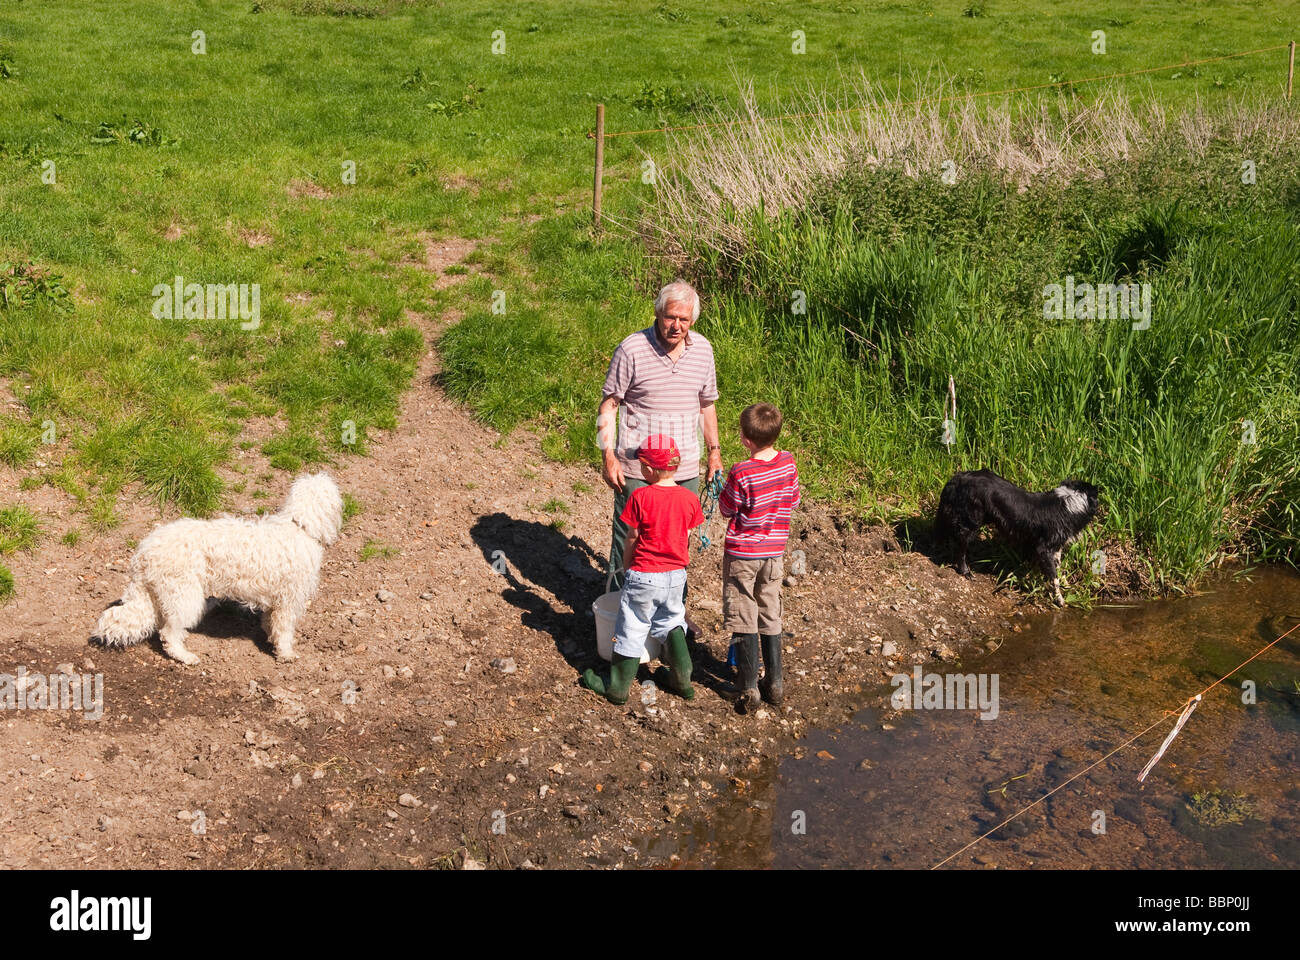 Deux jeunes garçons qui visitent leur grand-oncle's farm dans la campagne au Royaume-Uni dans un cadre rural avec des chiens Banque D'Images